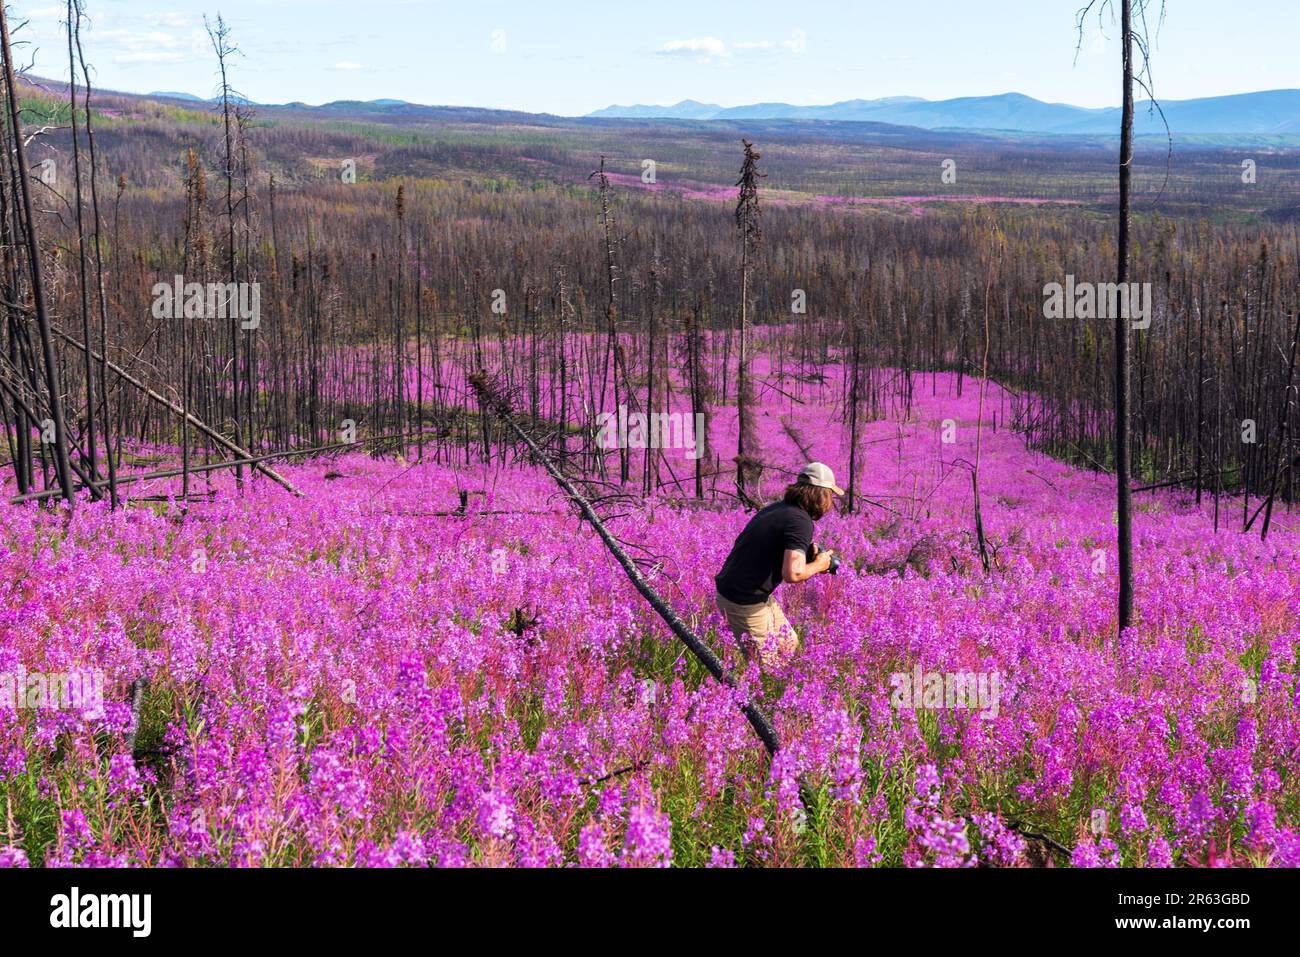 Ein Mann mit langen braunen Haaren, der im Sommer auf einem Feld mit tausenden lila rosa Blumen herumläuft. Wald regeneriert sich nach einem Waldbrand. Stockfoto